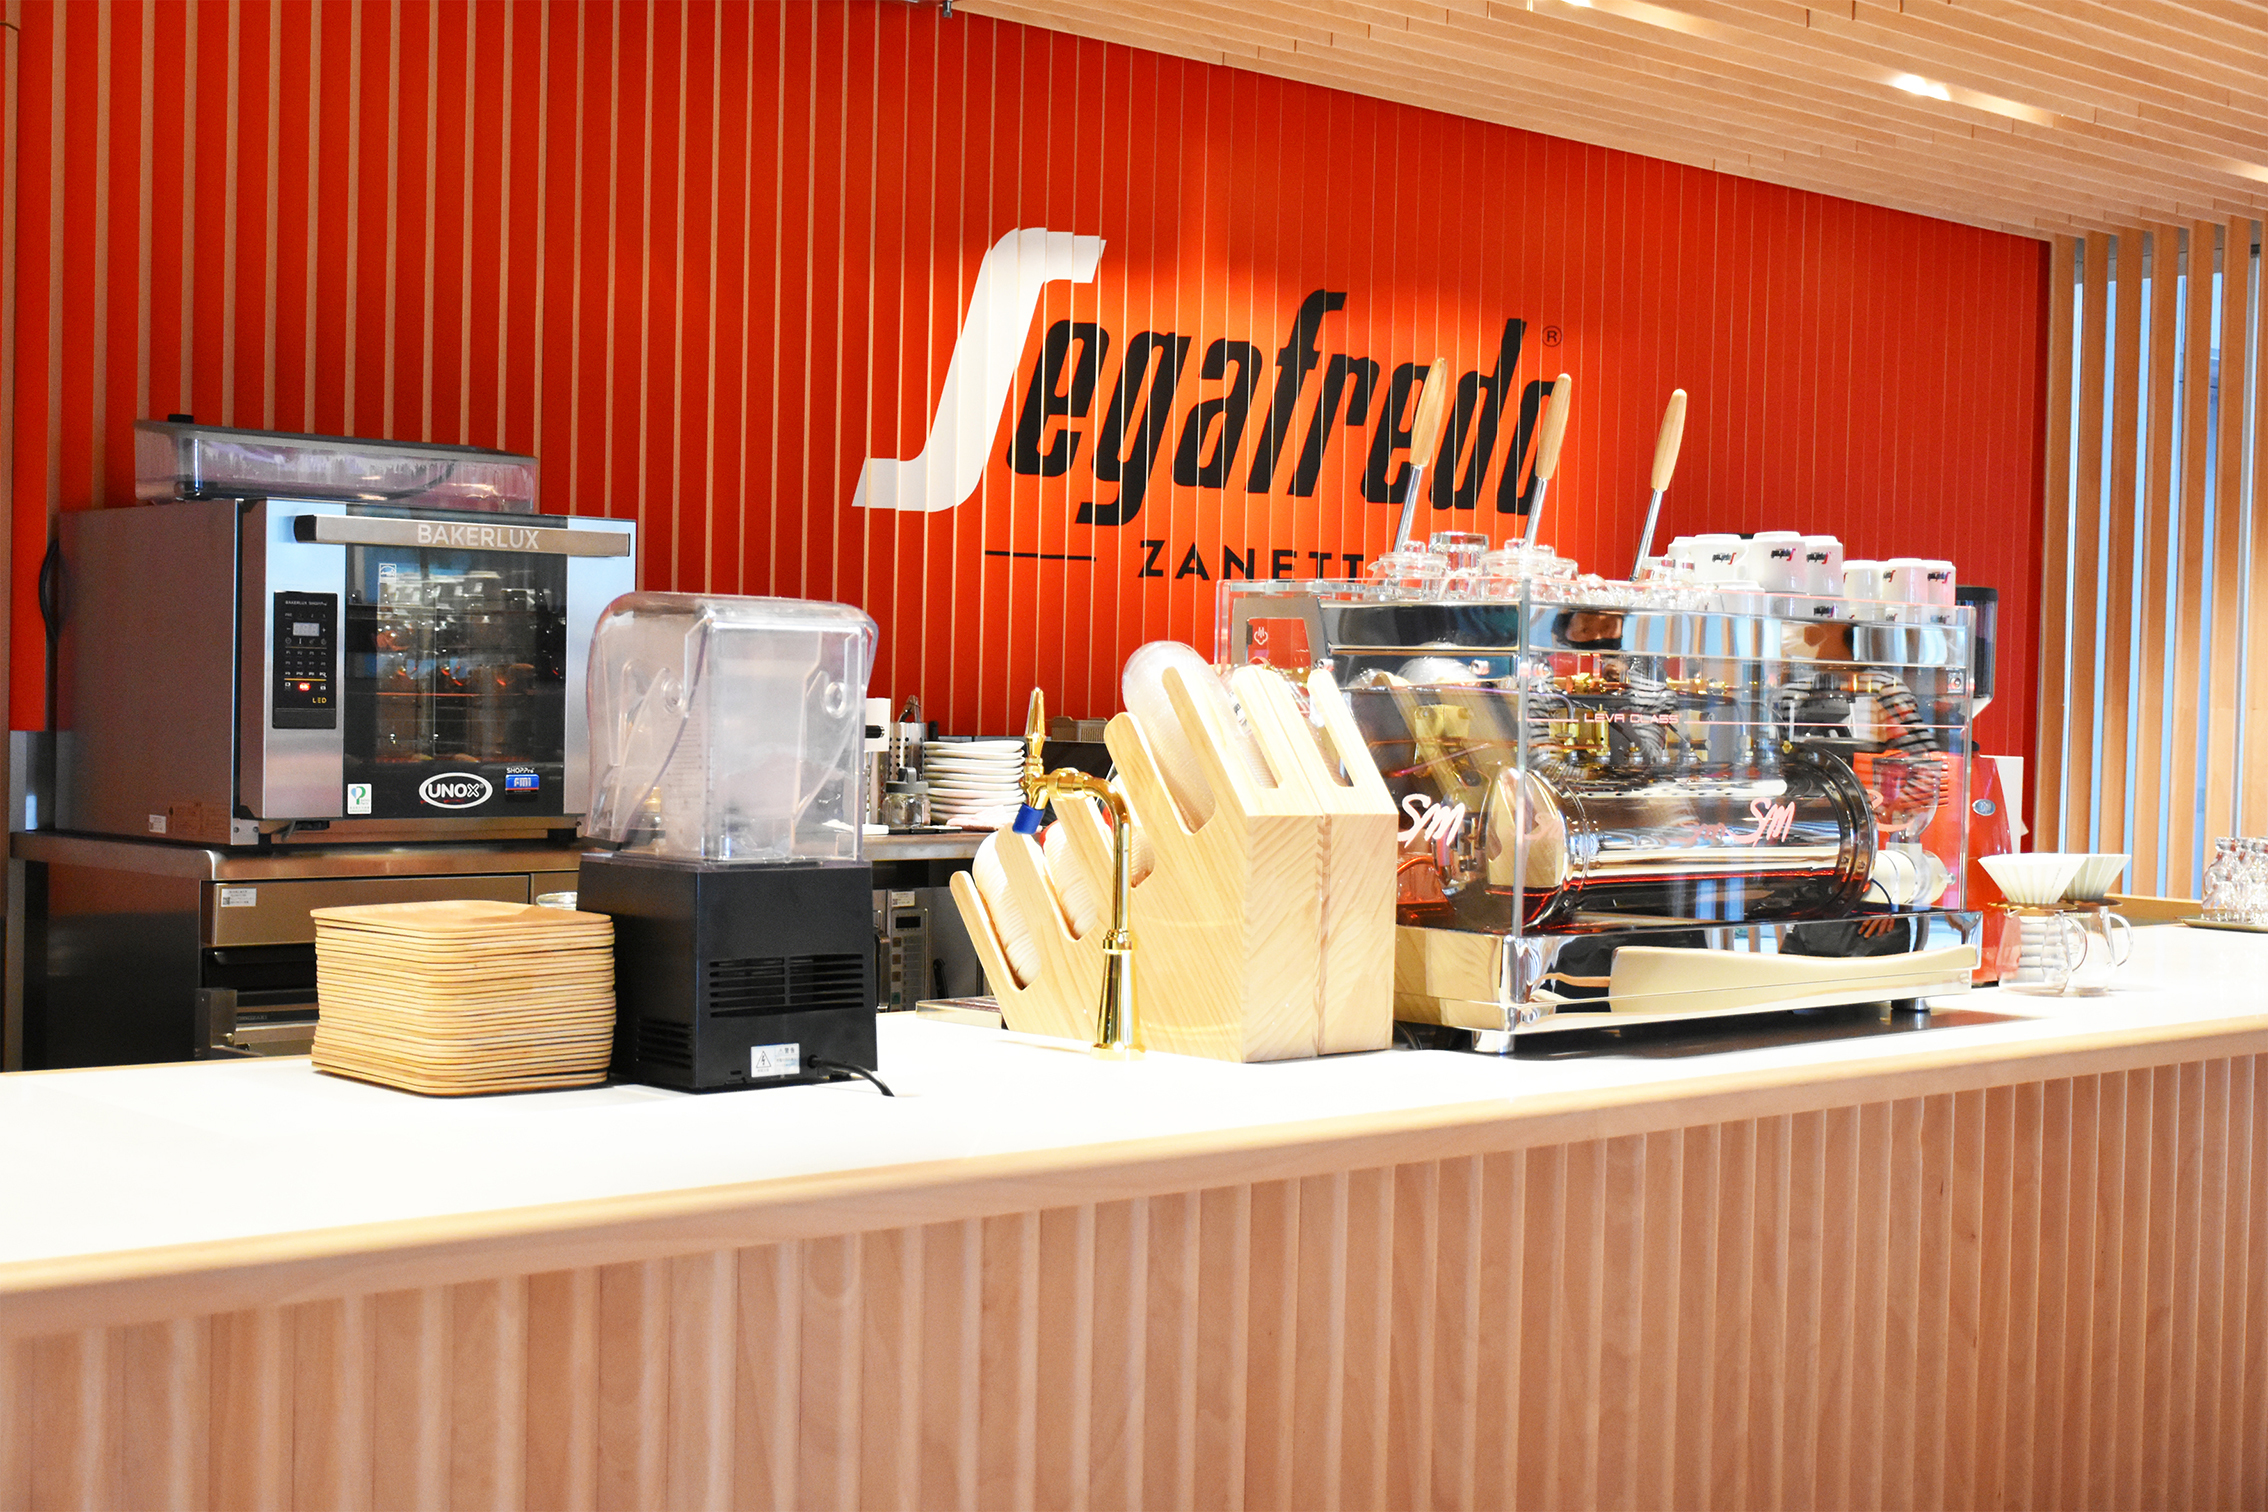 国内初となるキャンパス内コラボレーションカフェ
SIT Global Caffe empowered by Segafredo
9月21日(水)オープン